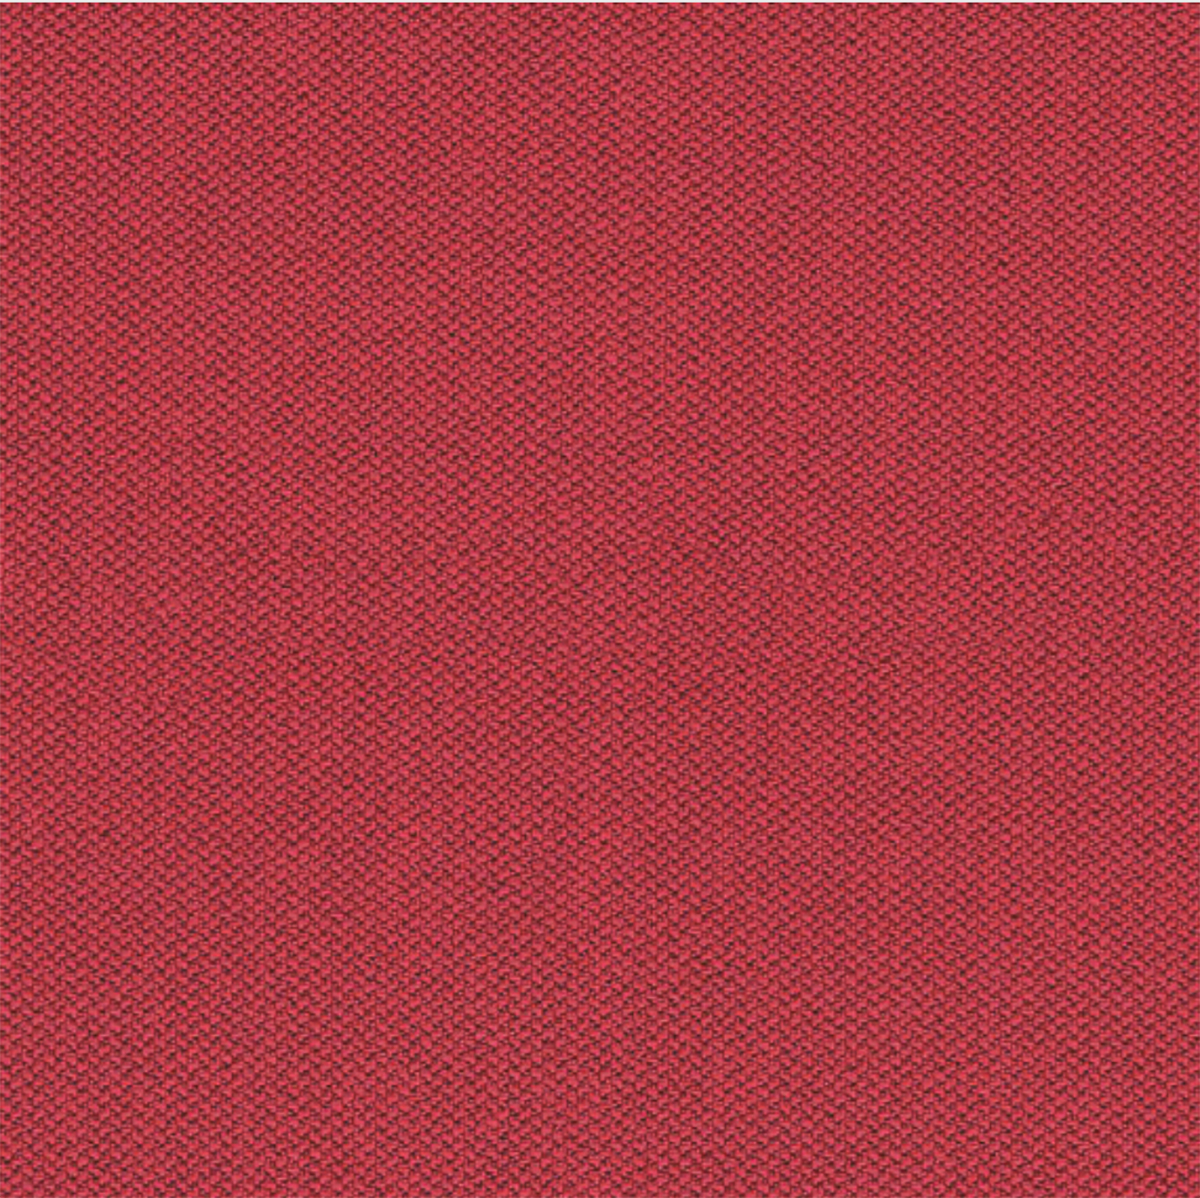 Camira Era Red Fabric [+$58.00]